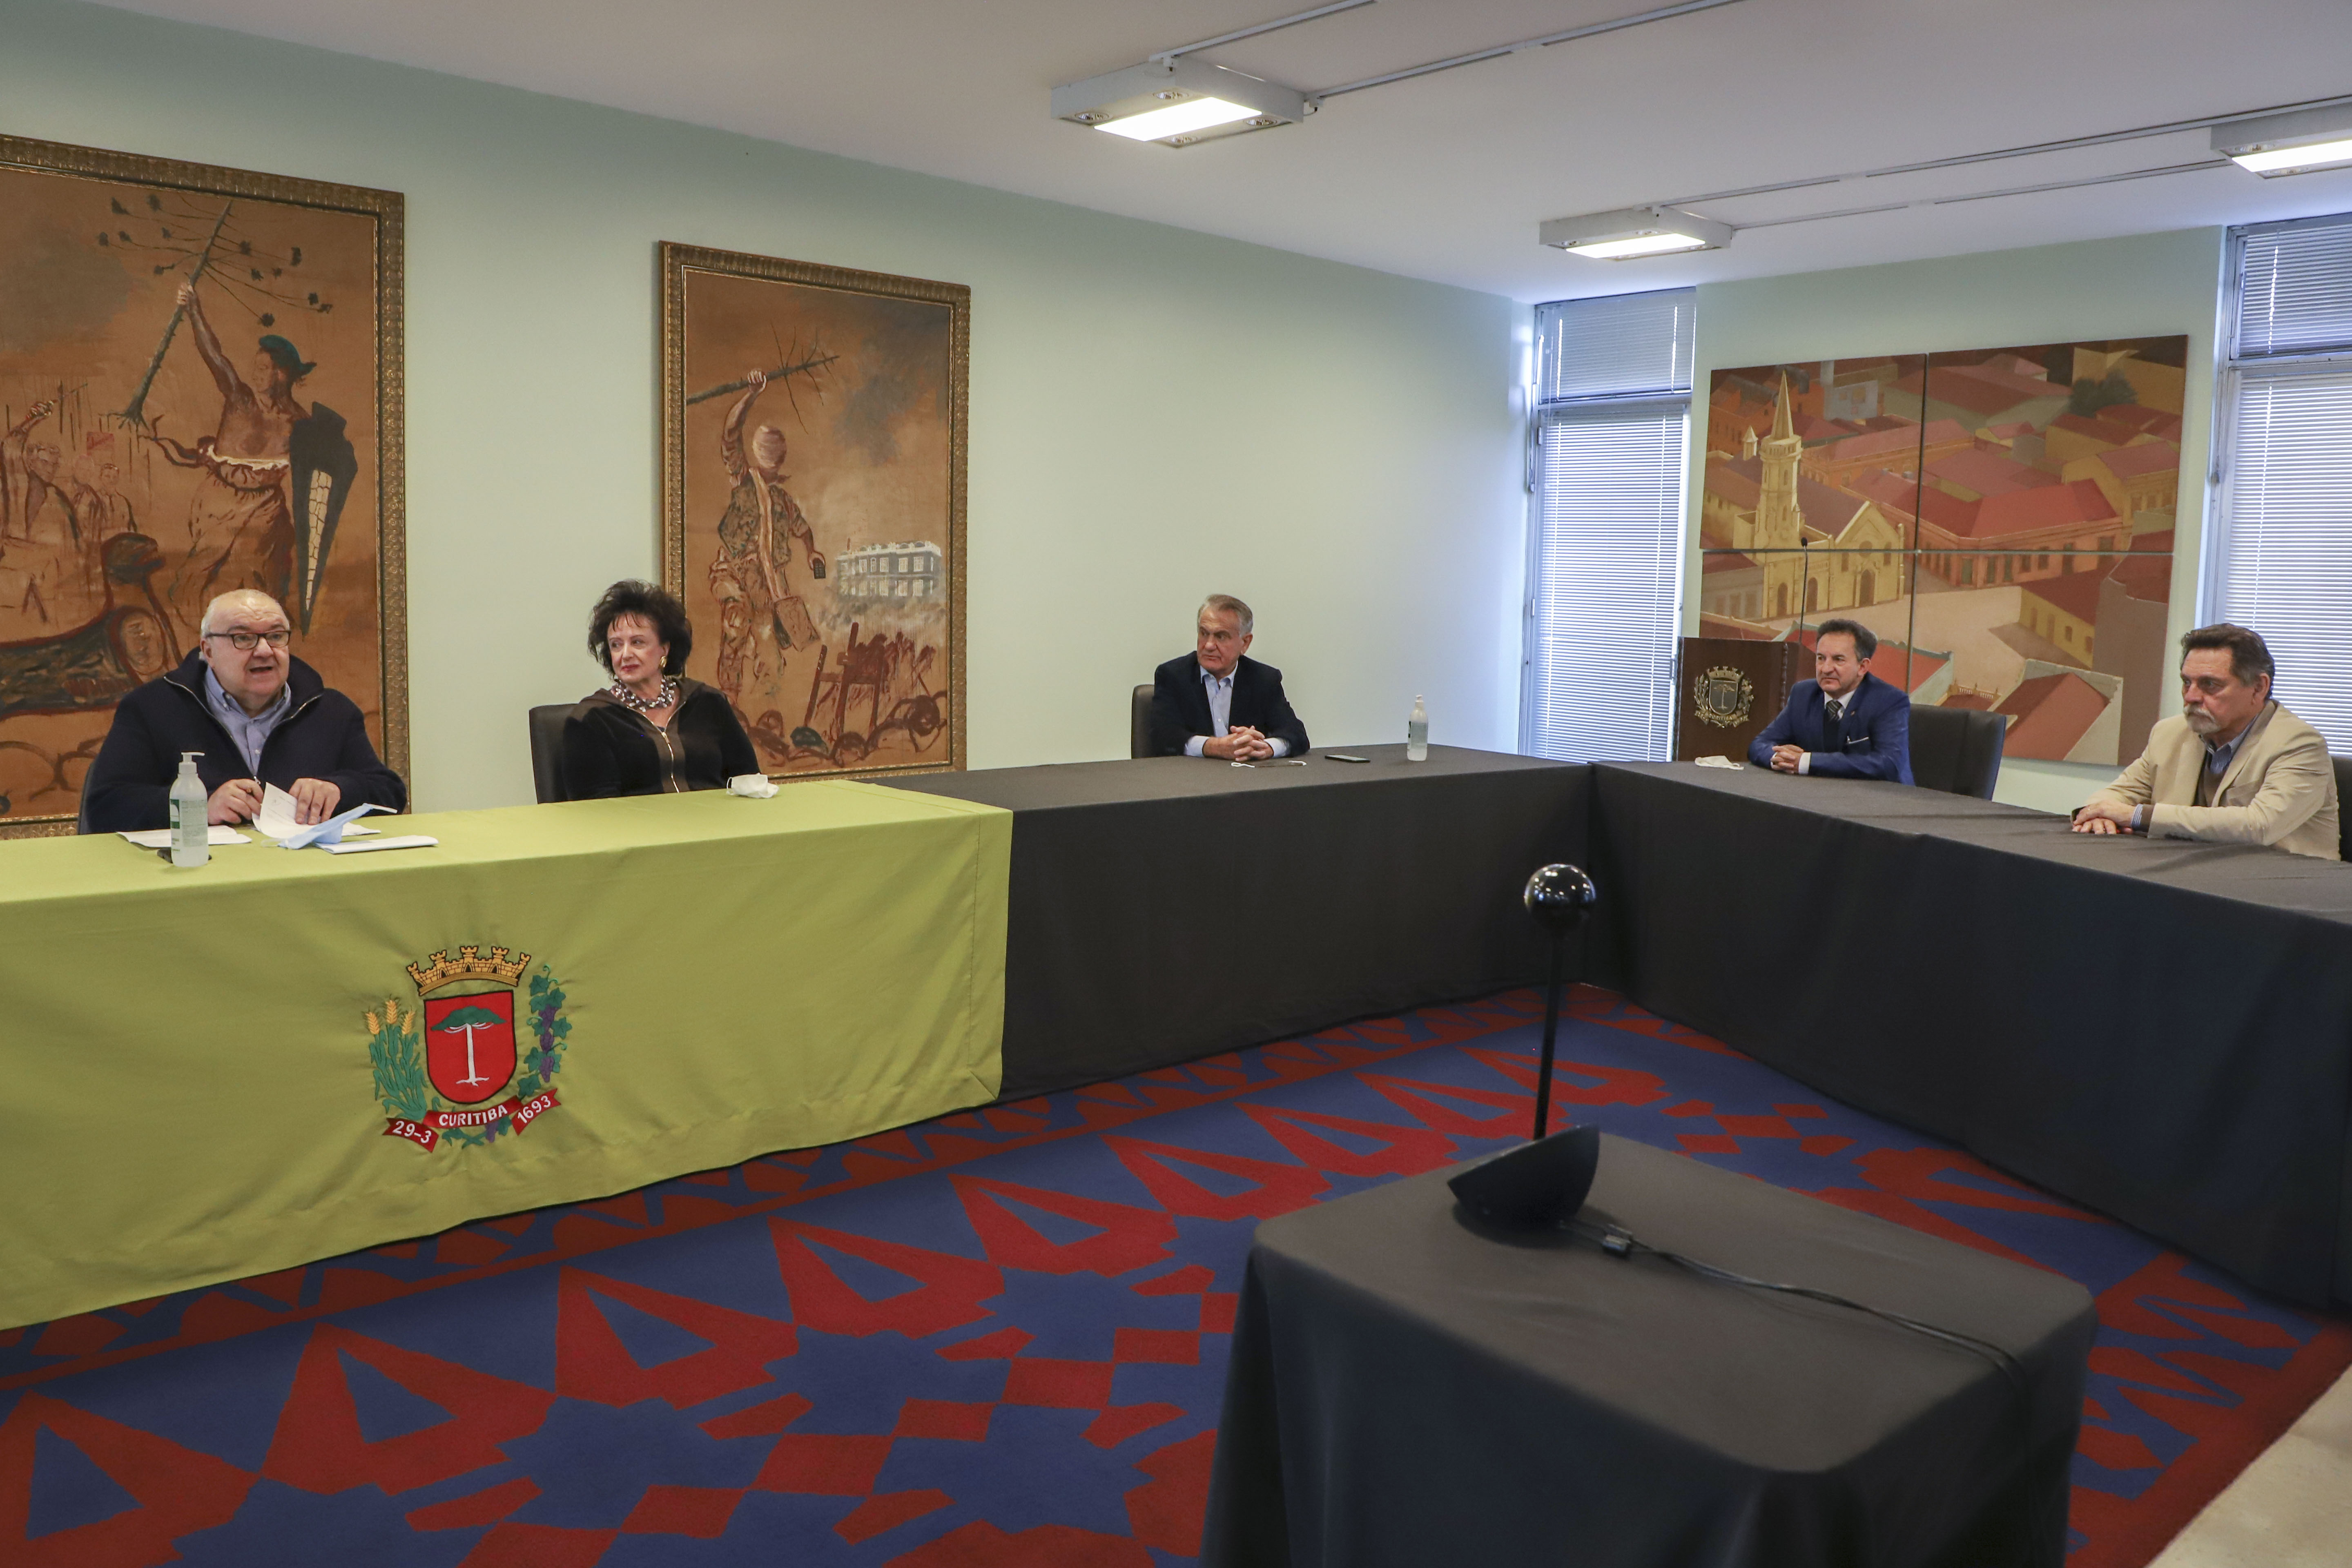 Prefeitura quer ajustes na lei que simplificou regularização de imóveis  foreiros — Portal da Câmara Municipal de Curitiba